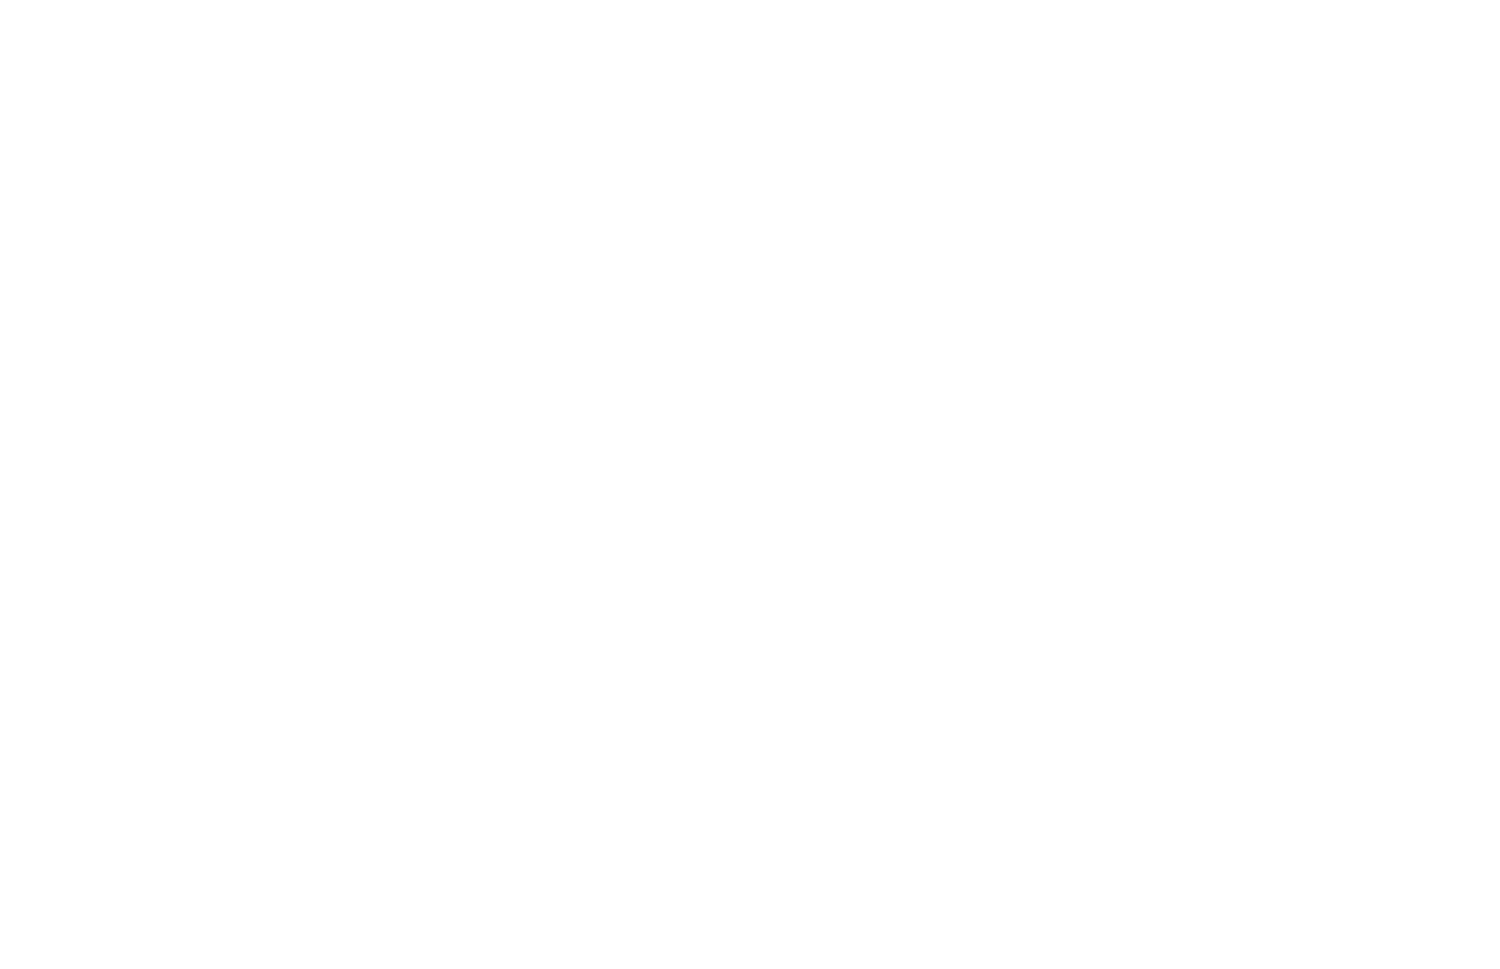 Ben Kuns Bodyworks